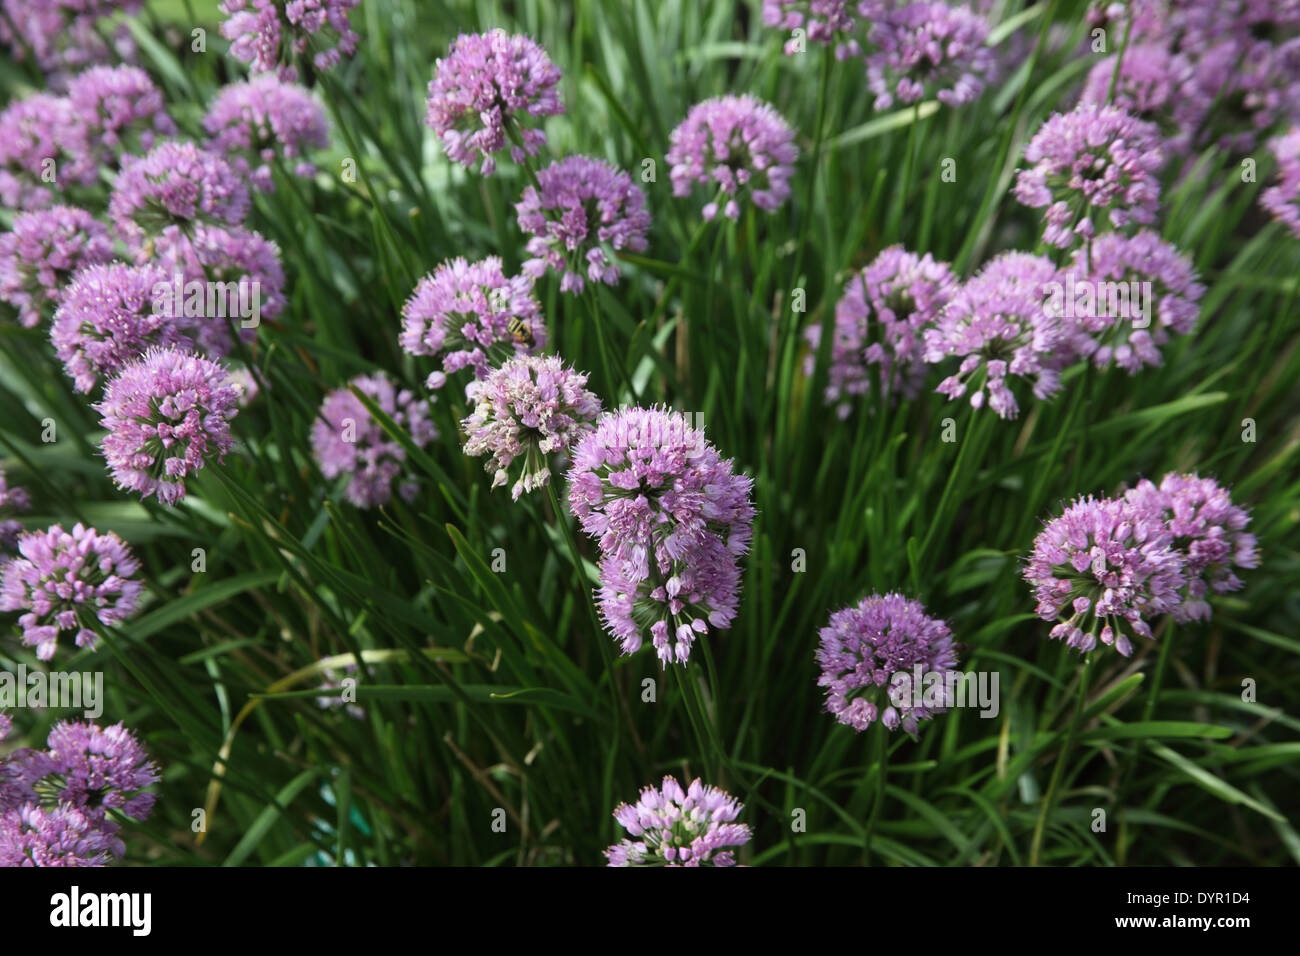 Allium carinatum ssp pulchellum Tubergens form close up of flowers Stock Photo